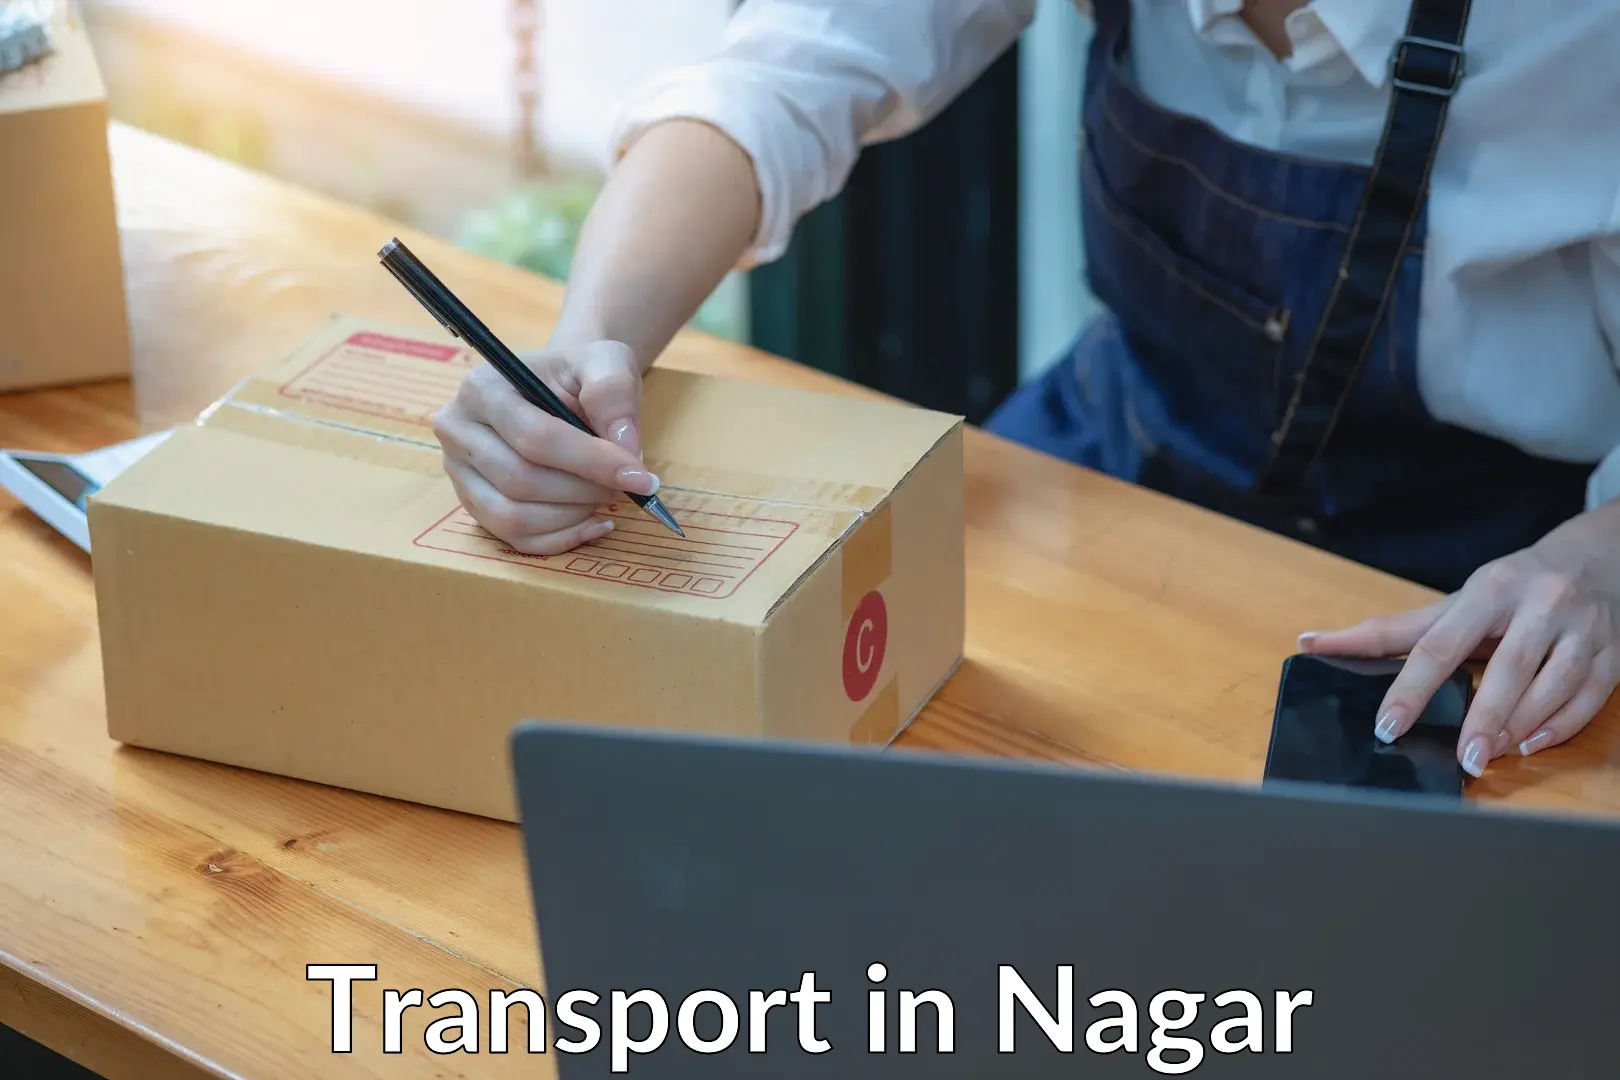 Interstate transport services in Nagar